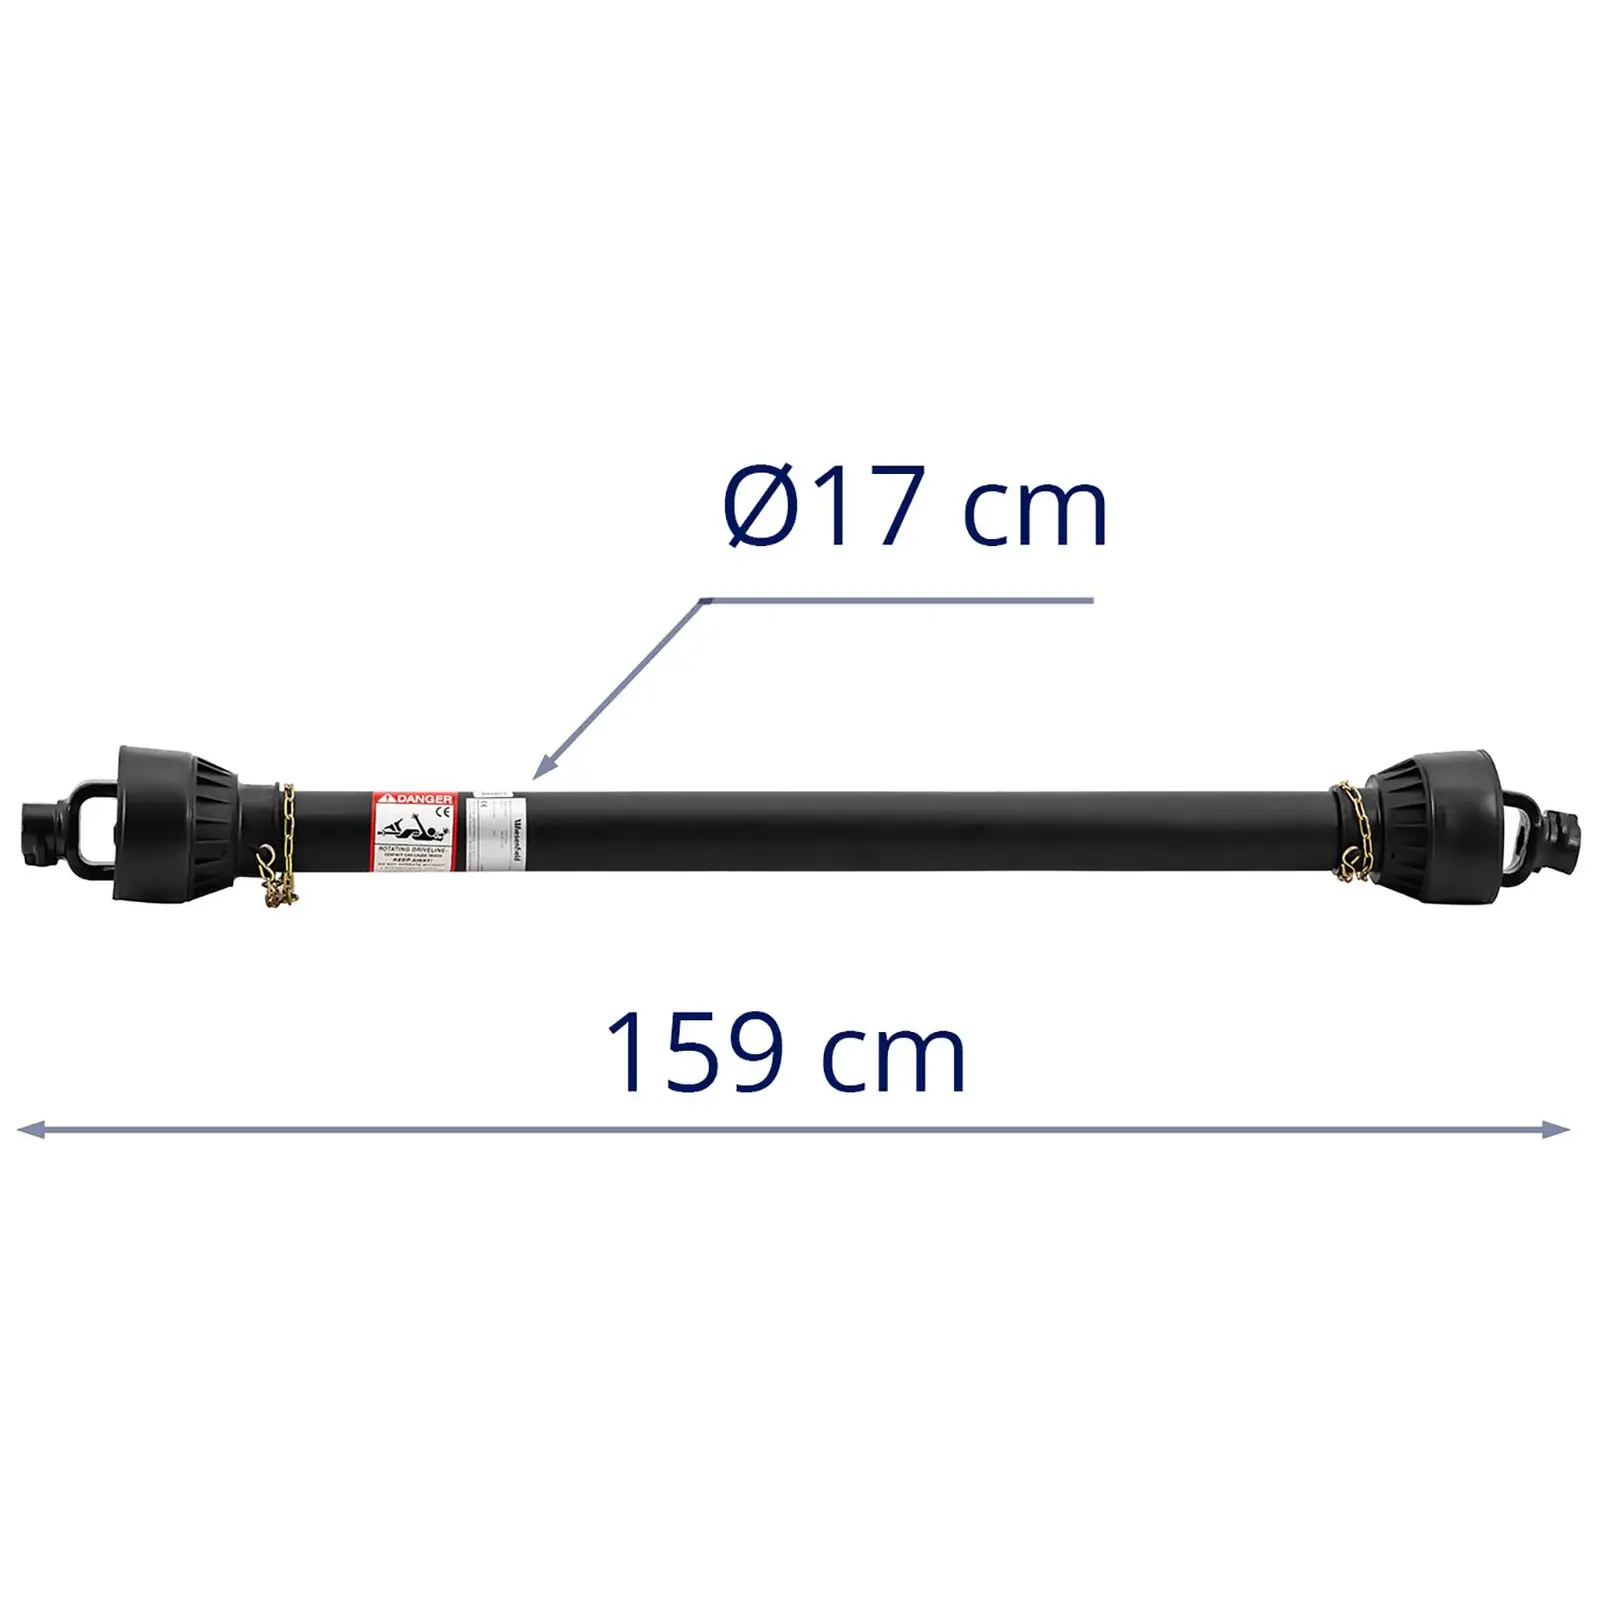 Arbre de transmission avec compensation de longueur - 160 - 235 cm - 1 3/8 pouce / 6 cannelures